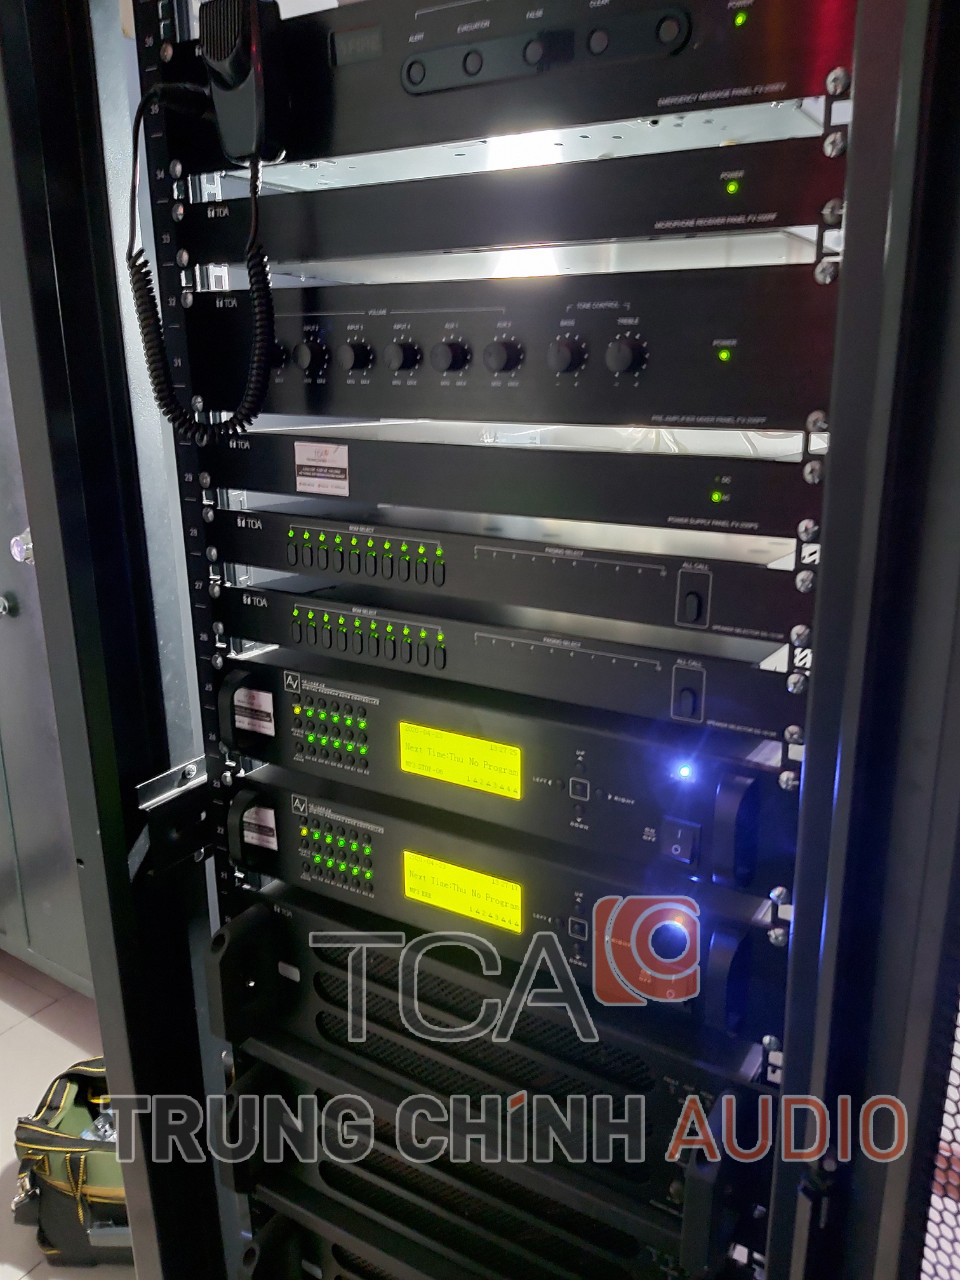 Hệ thống âm thanh nhà xưởng TOA FV-200: thông báo công cộng nhà máy May TAV Thái Bình